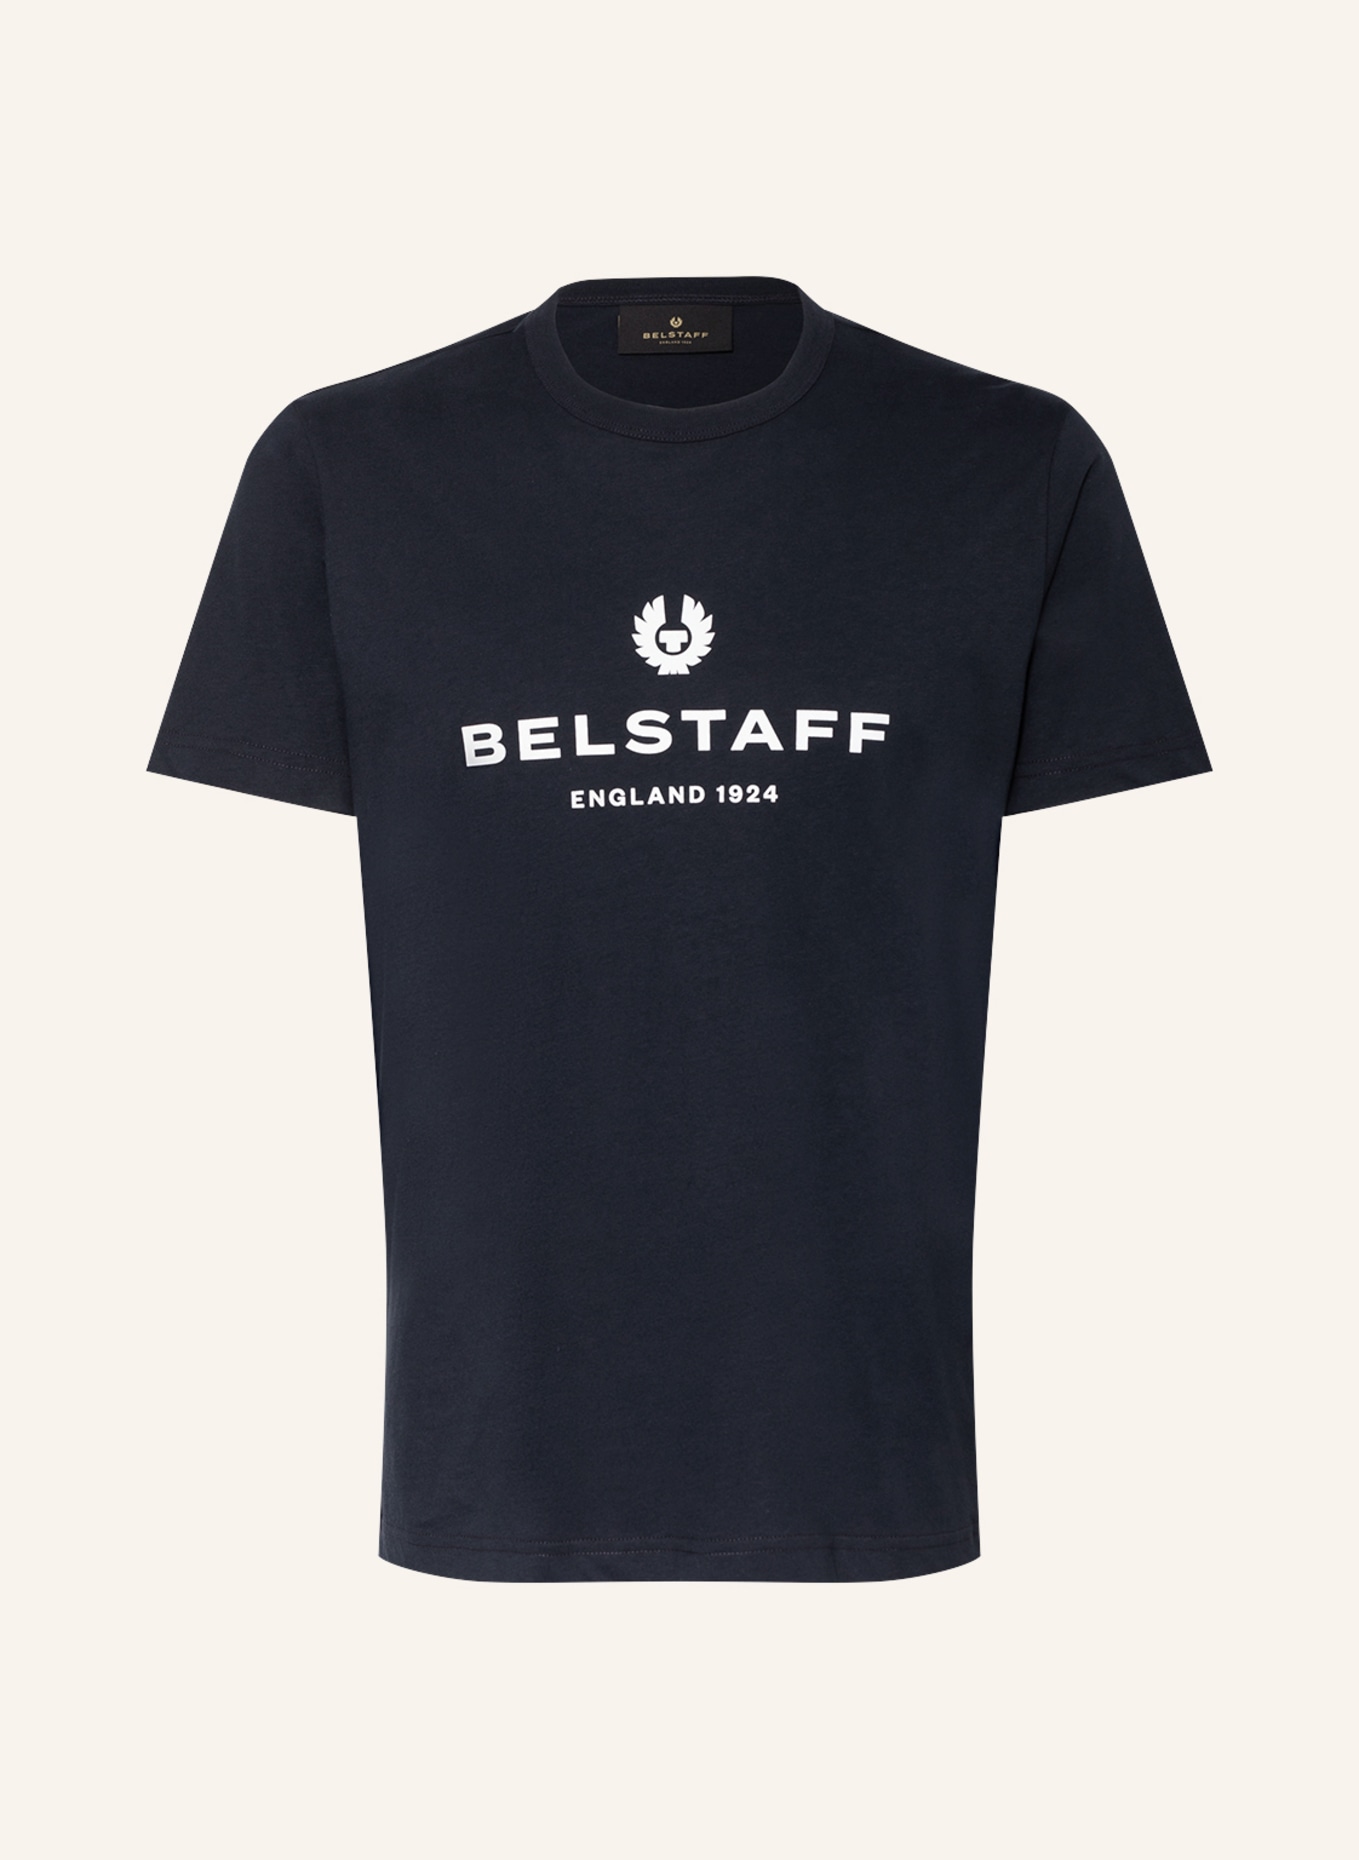 BELSTAFF T-shirt 1924, Color: DARK BLUE (Image 1)